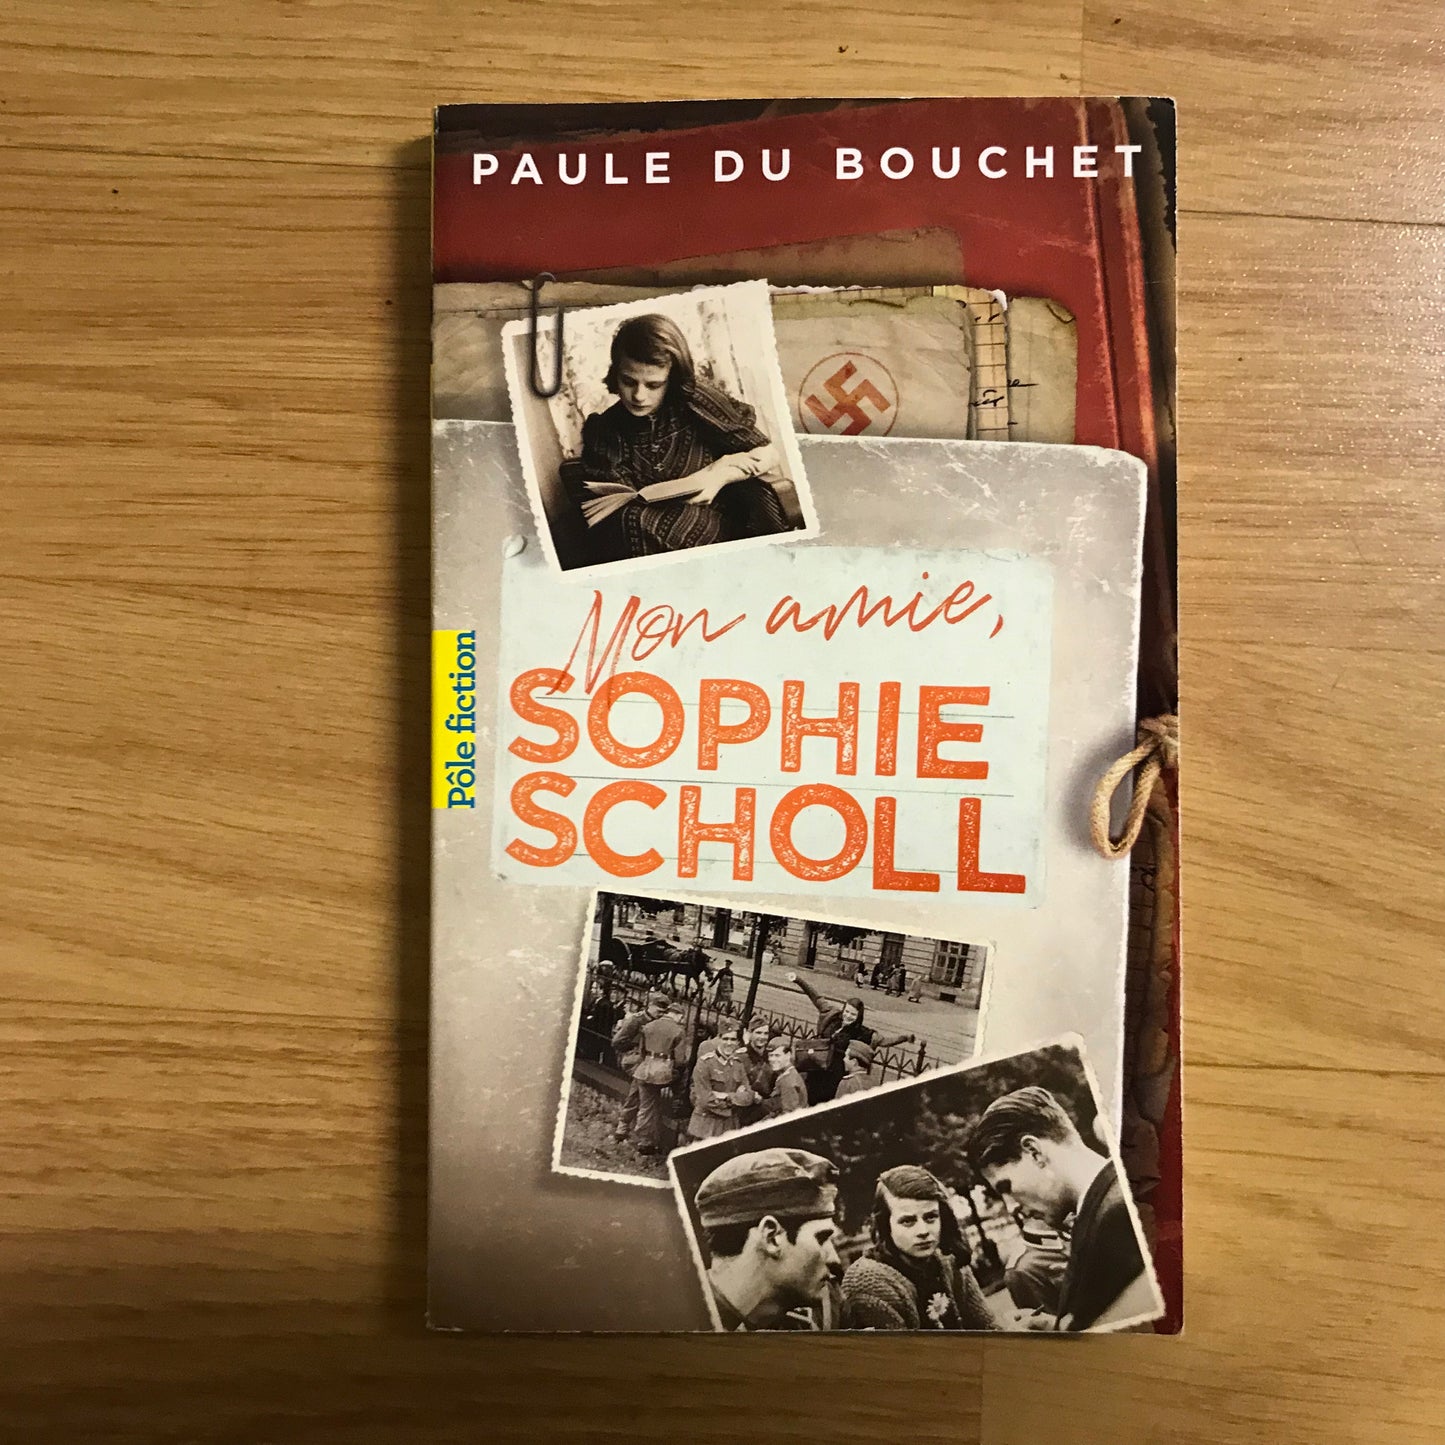 Bouchet du, Paule - Mon amie, Sophie Scholl